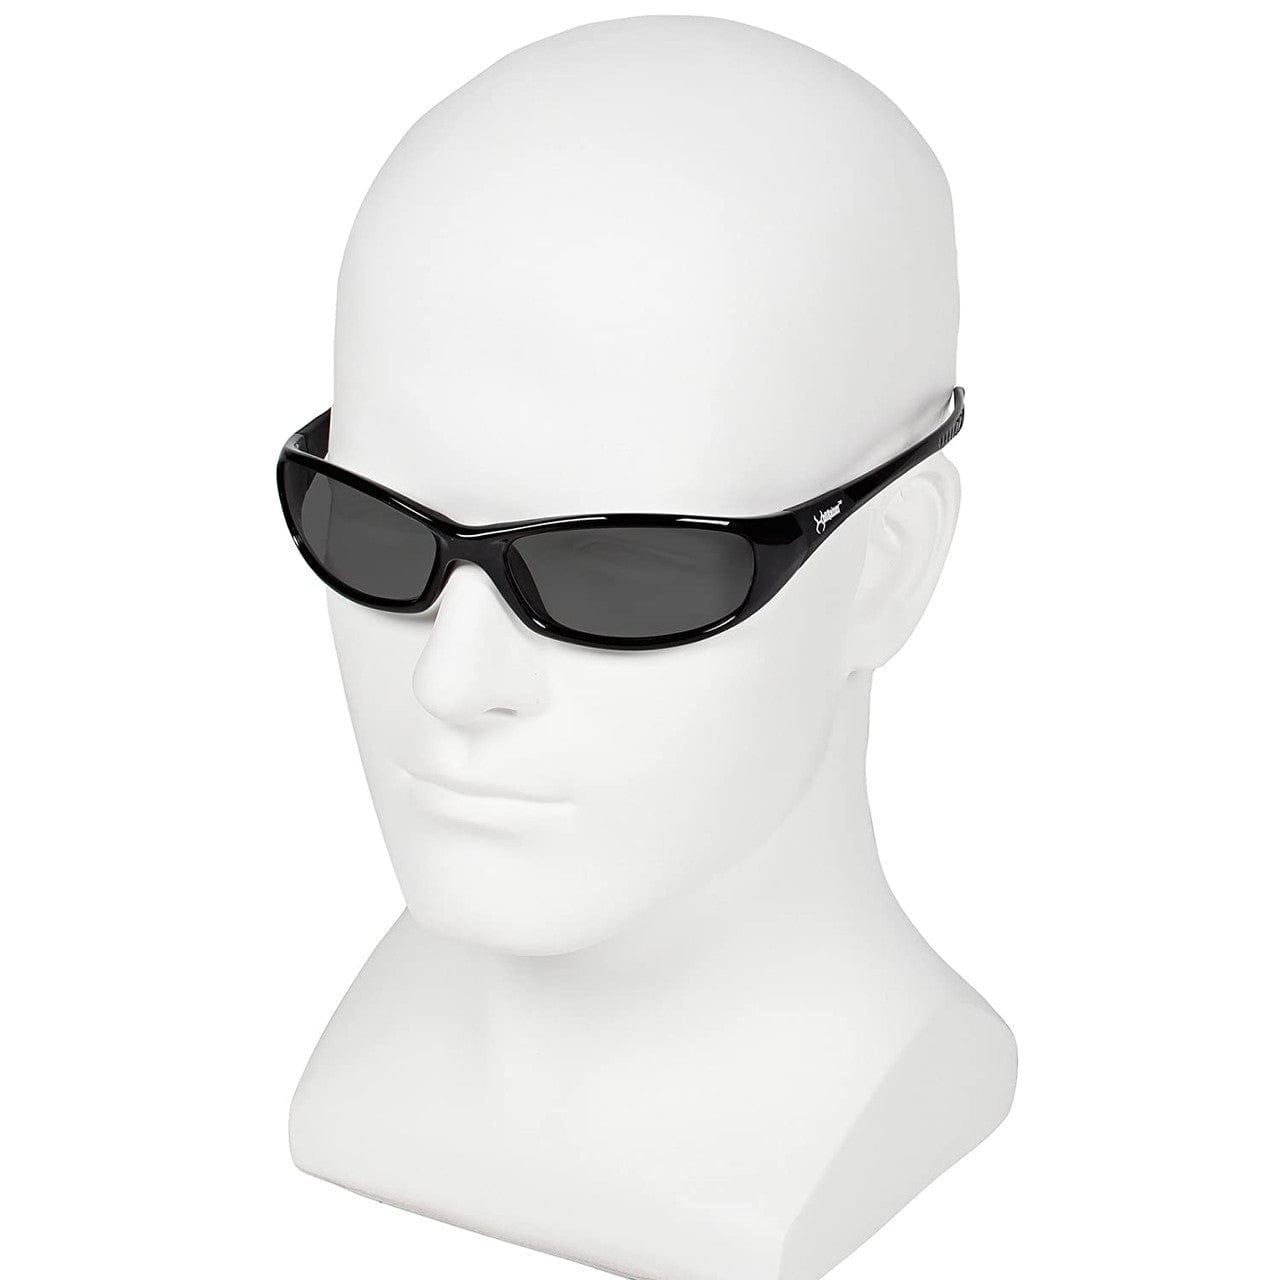 KleenGuard Hellraiser Safety Glasses with Smoke Lens 25714 Model